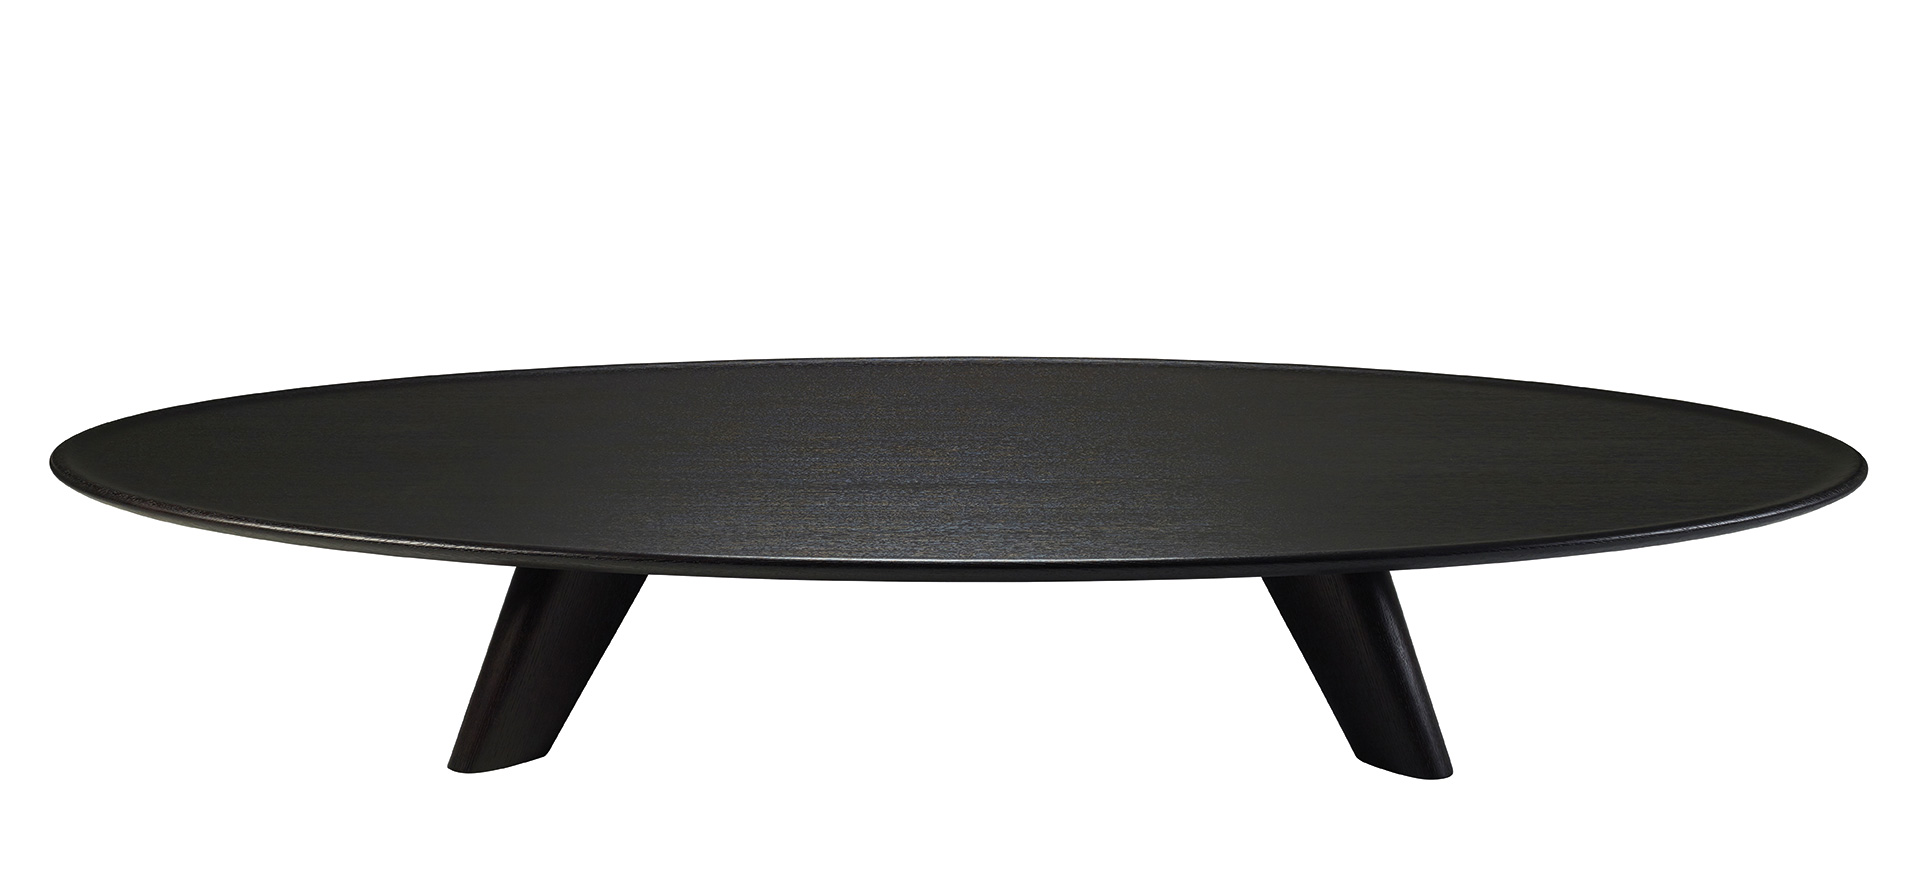 Djennè est une table basse en bois avec des bords bombés et cannelés. Ce meuble fait partie de la collection « Indigo Tales » de Promemoria | Promemoria